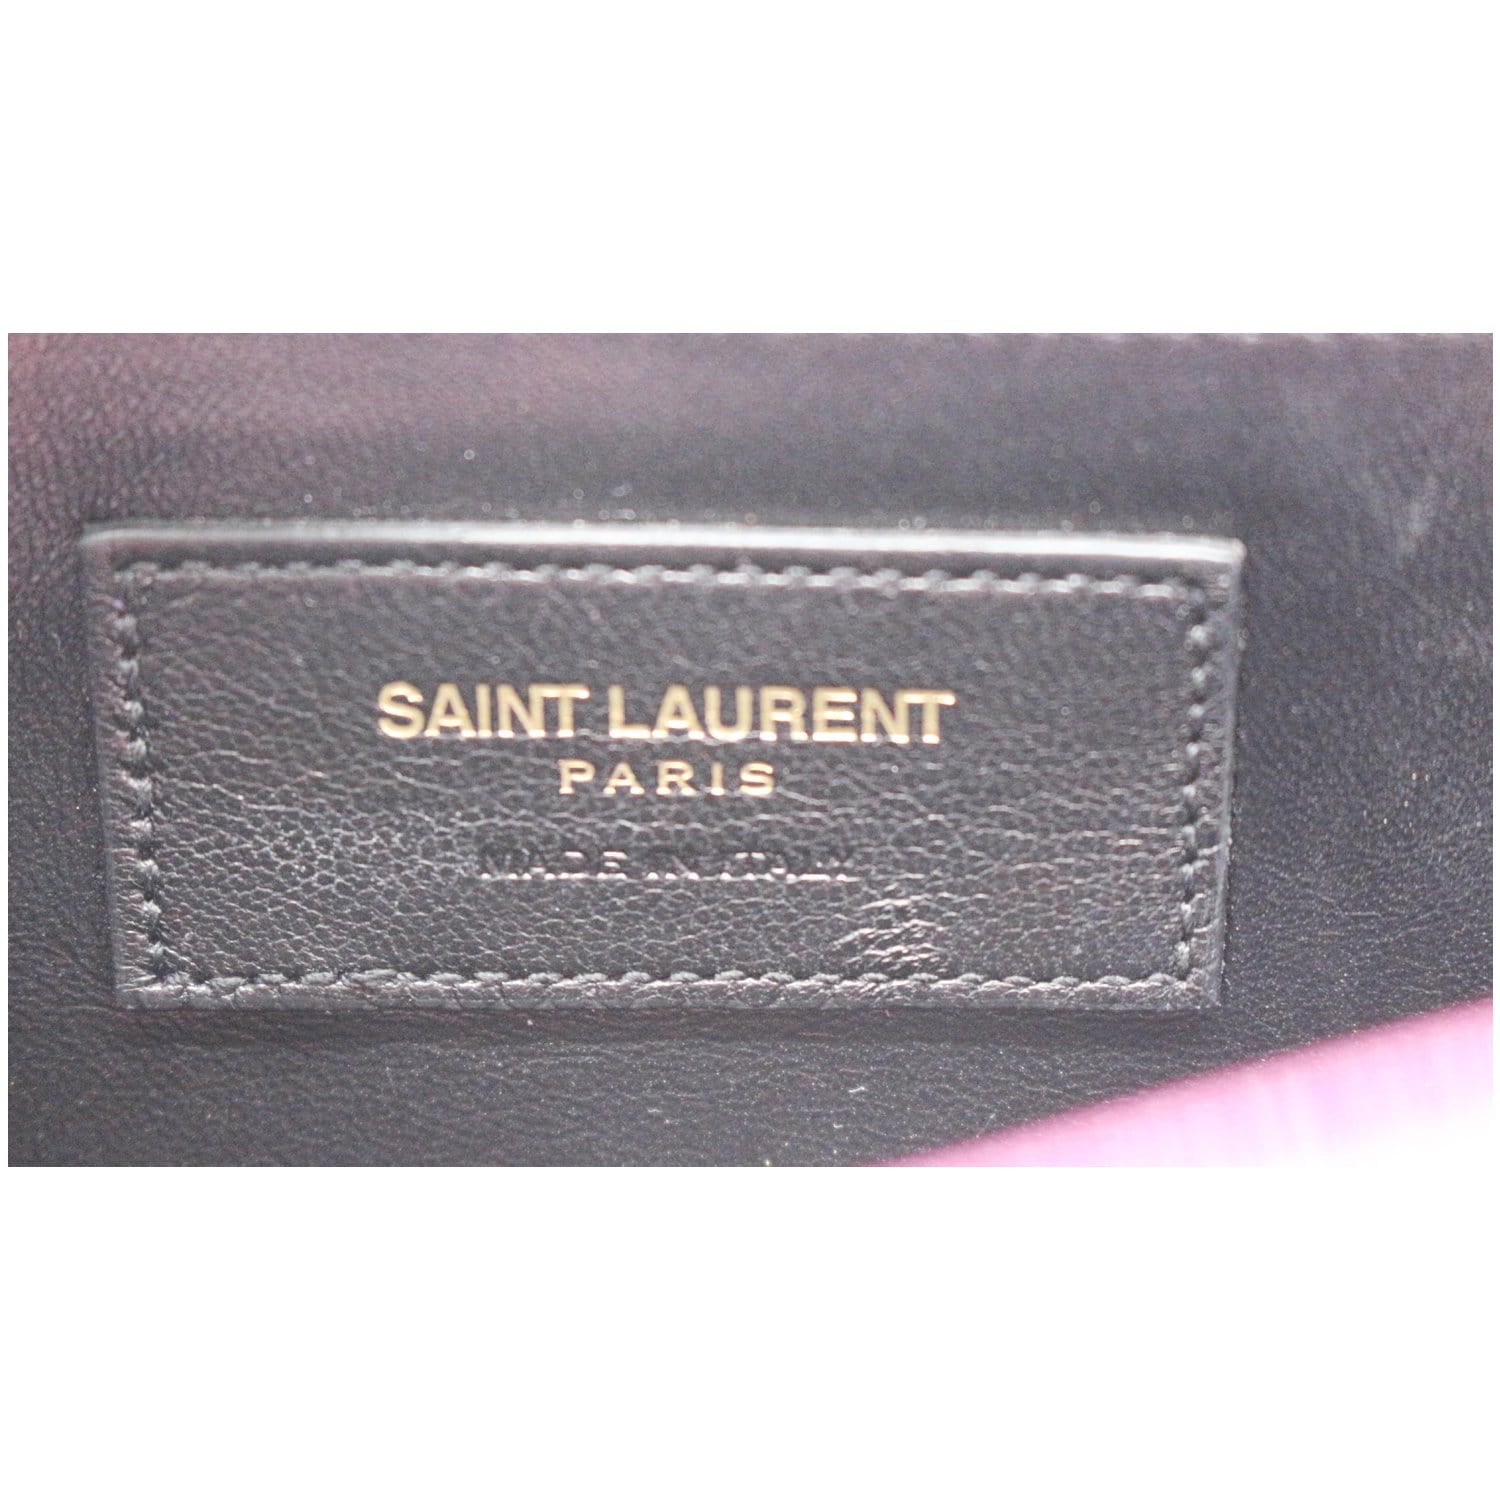 Saint Laurent Belle De Jour Patent Leather Clutch | MTYCI